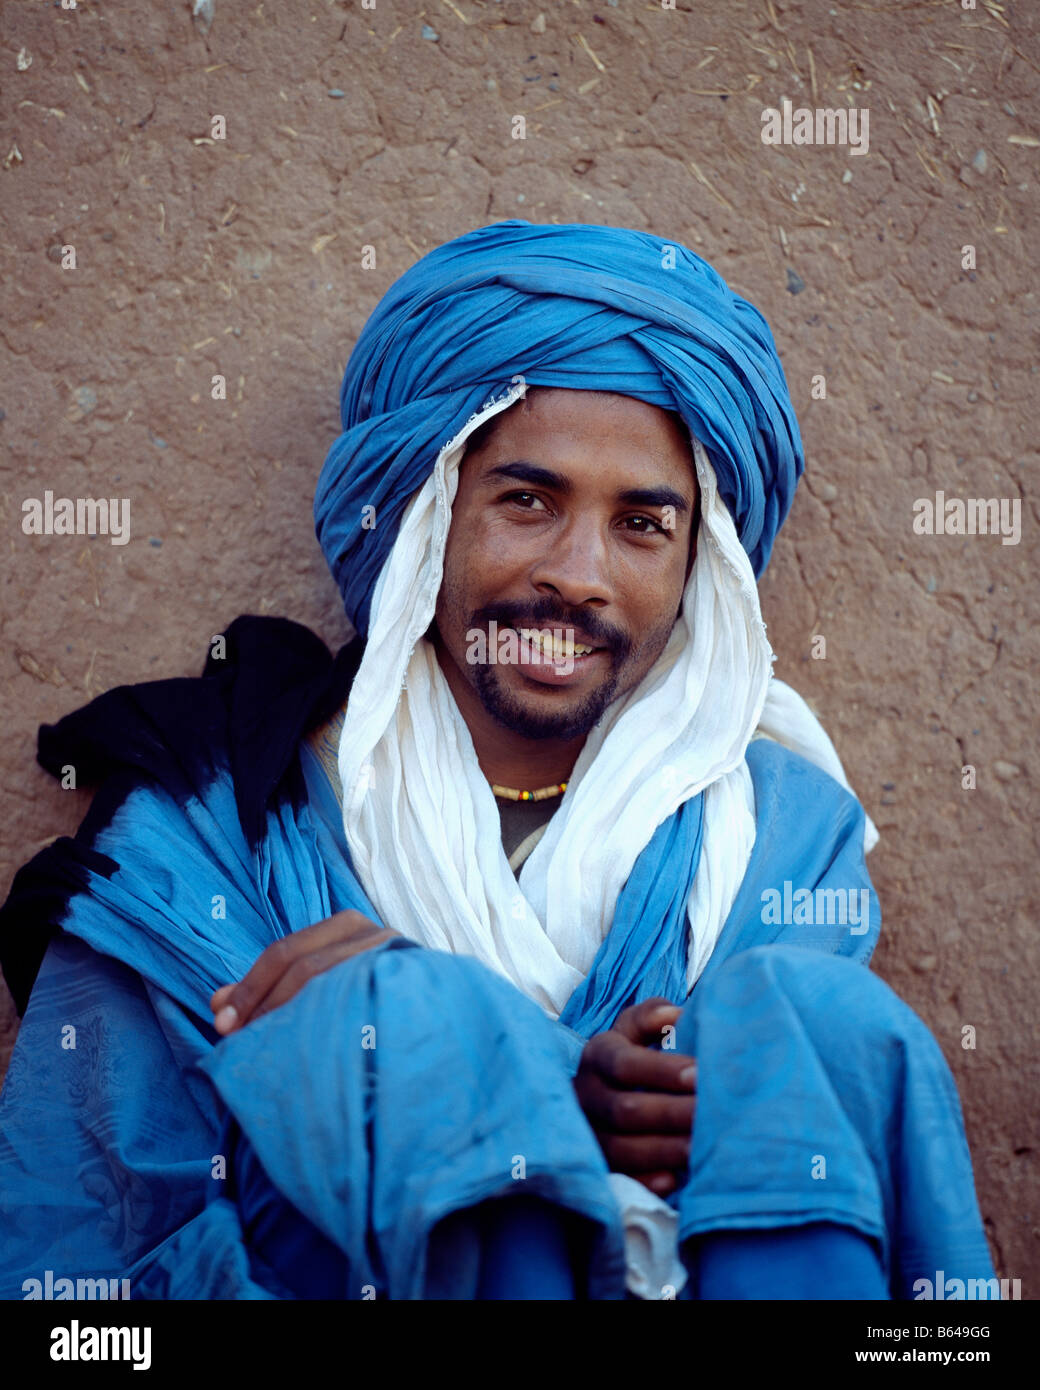 Blue man of the desert, Berber tribe, Morocco Stock Photo